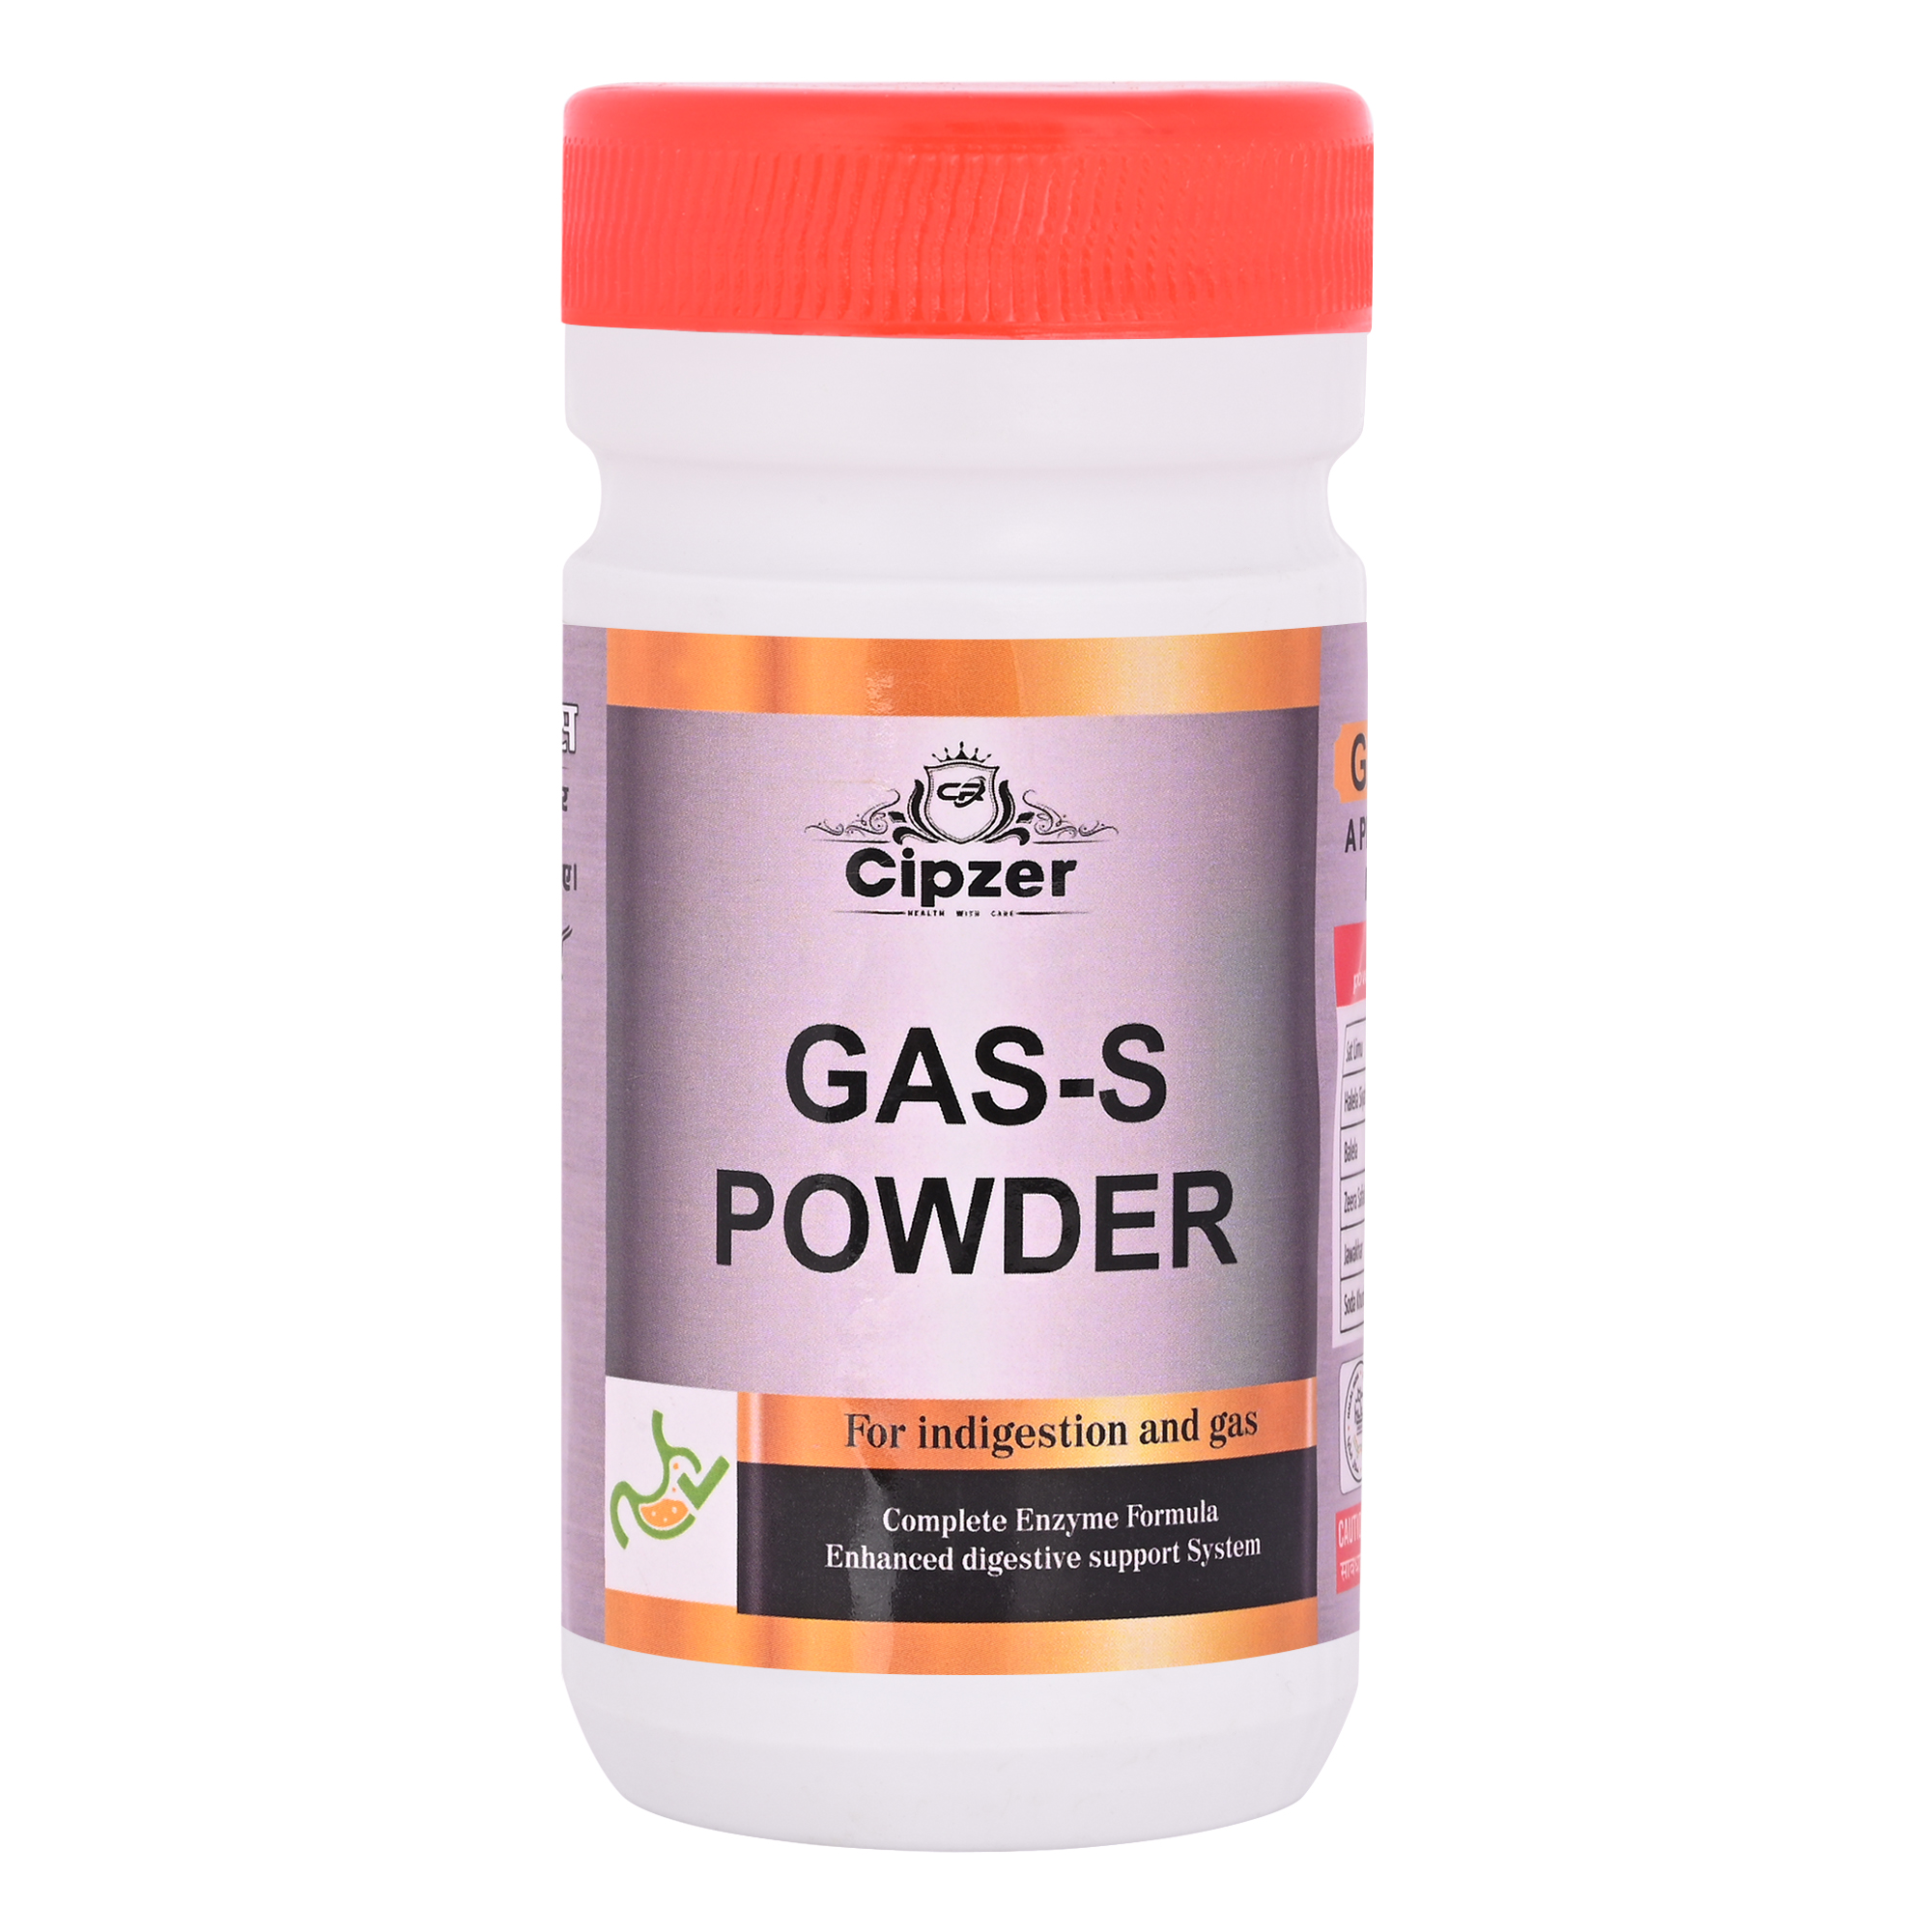 Buy Cipzer Gas –S Powder at Best Price Online